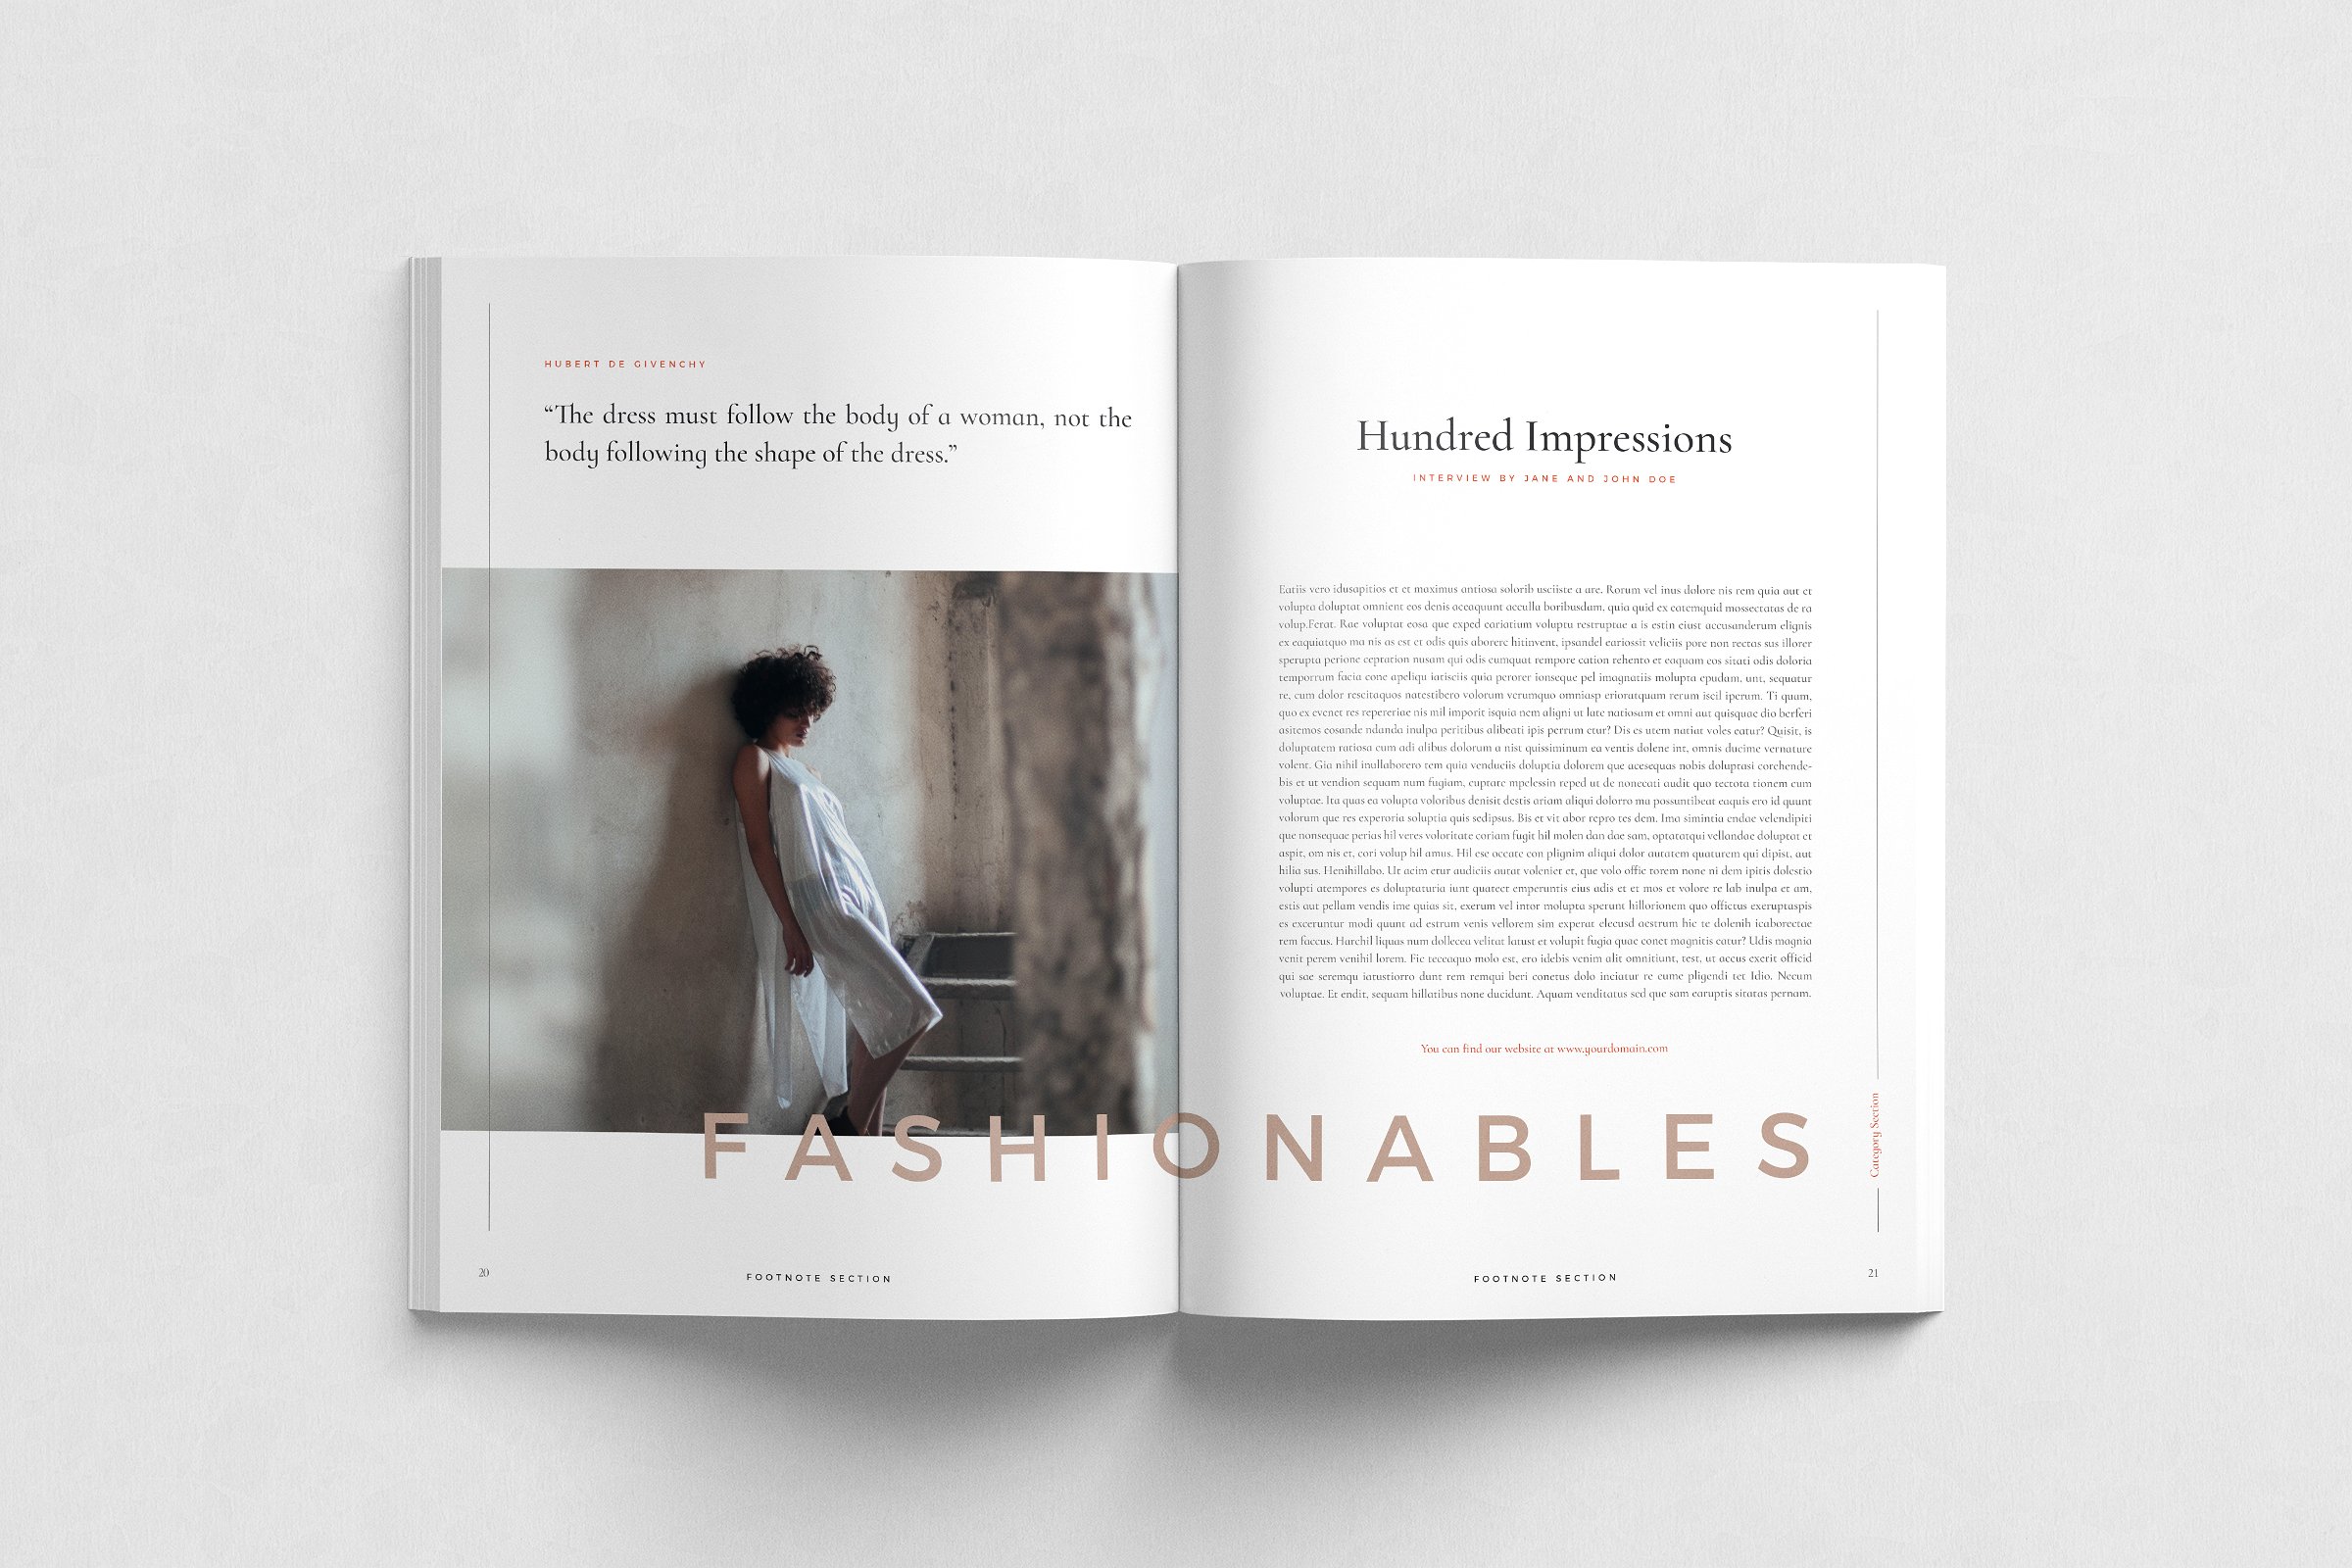 现代简约的服装品牌摄影宣传册模板 Modern Minimalist Clothing Brand Photography Brochure Template插图1